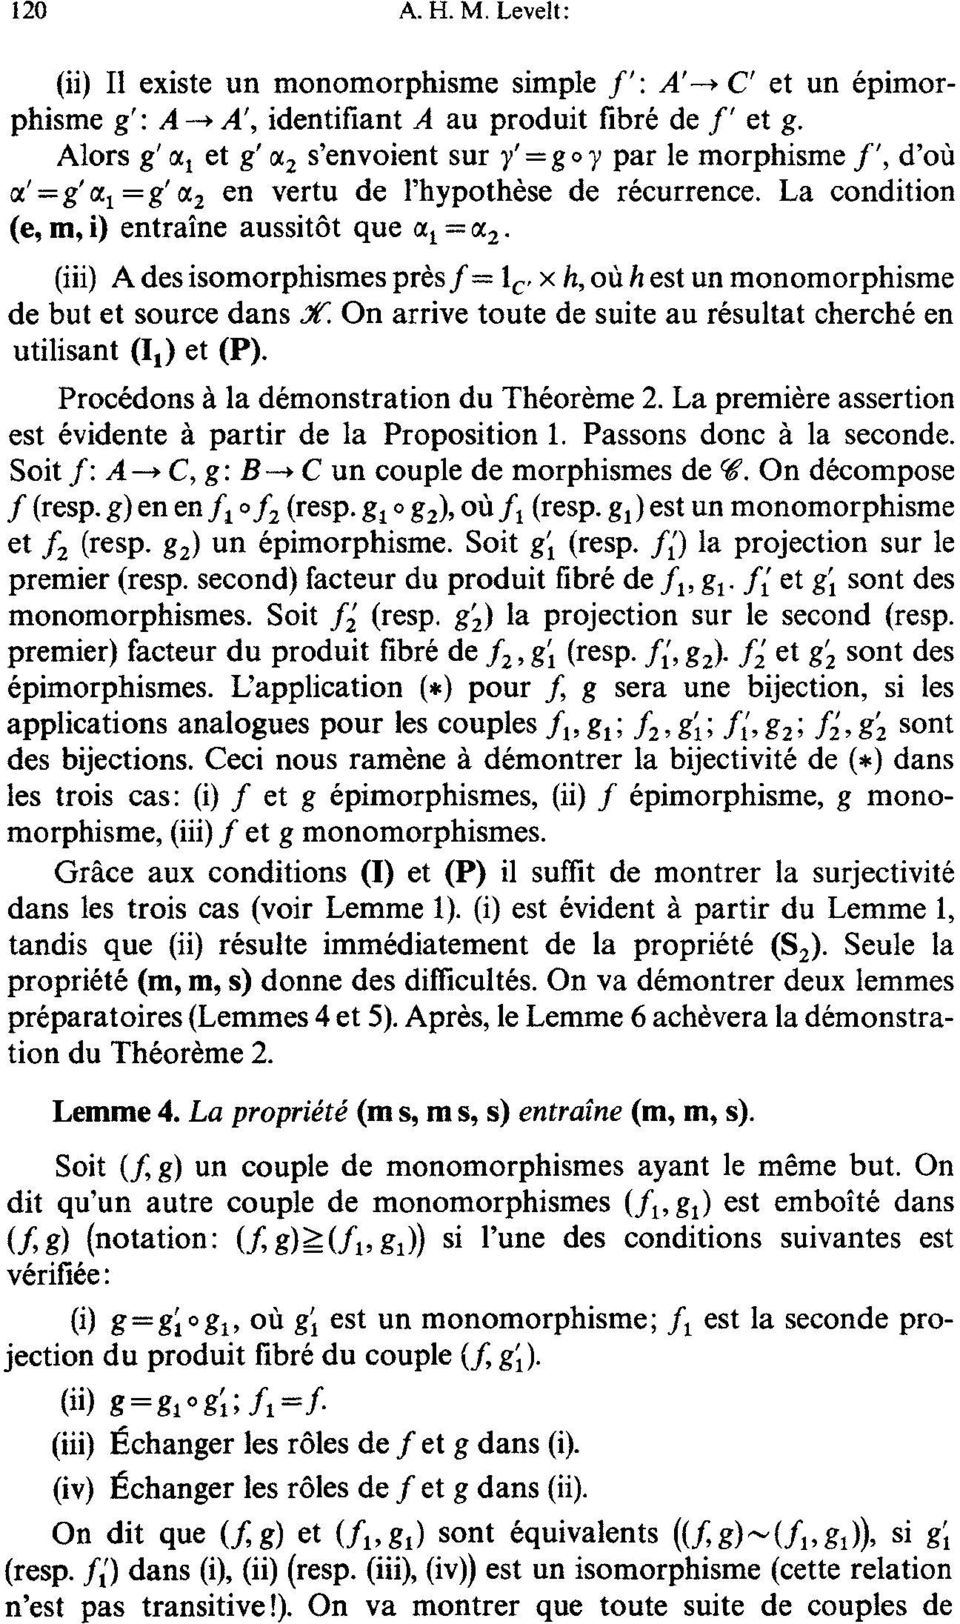 (iii) A des isomorphismes pr6sf= 1 c, x h, off h est un monomorphisme de but et source dans X. On arrive toute de suite au r6sultat cherch6 en utilisant (11) et (P).